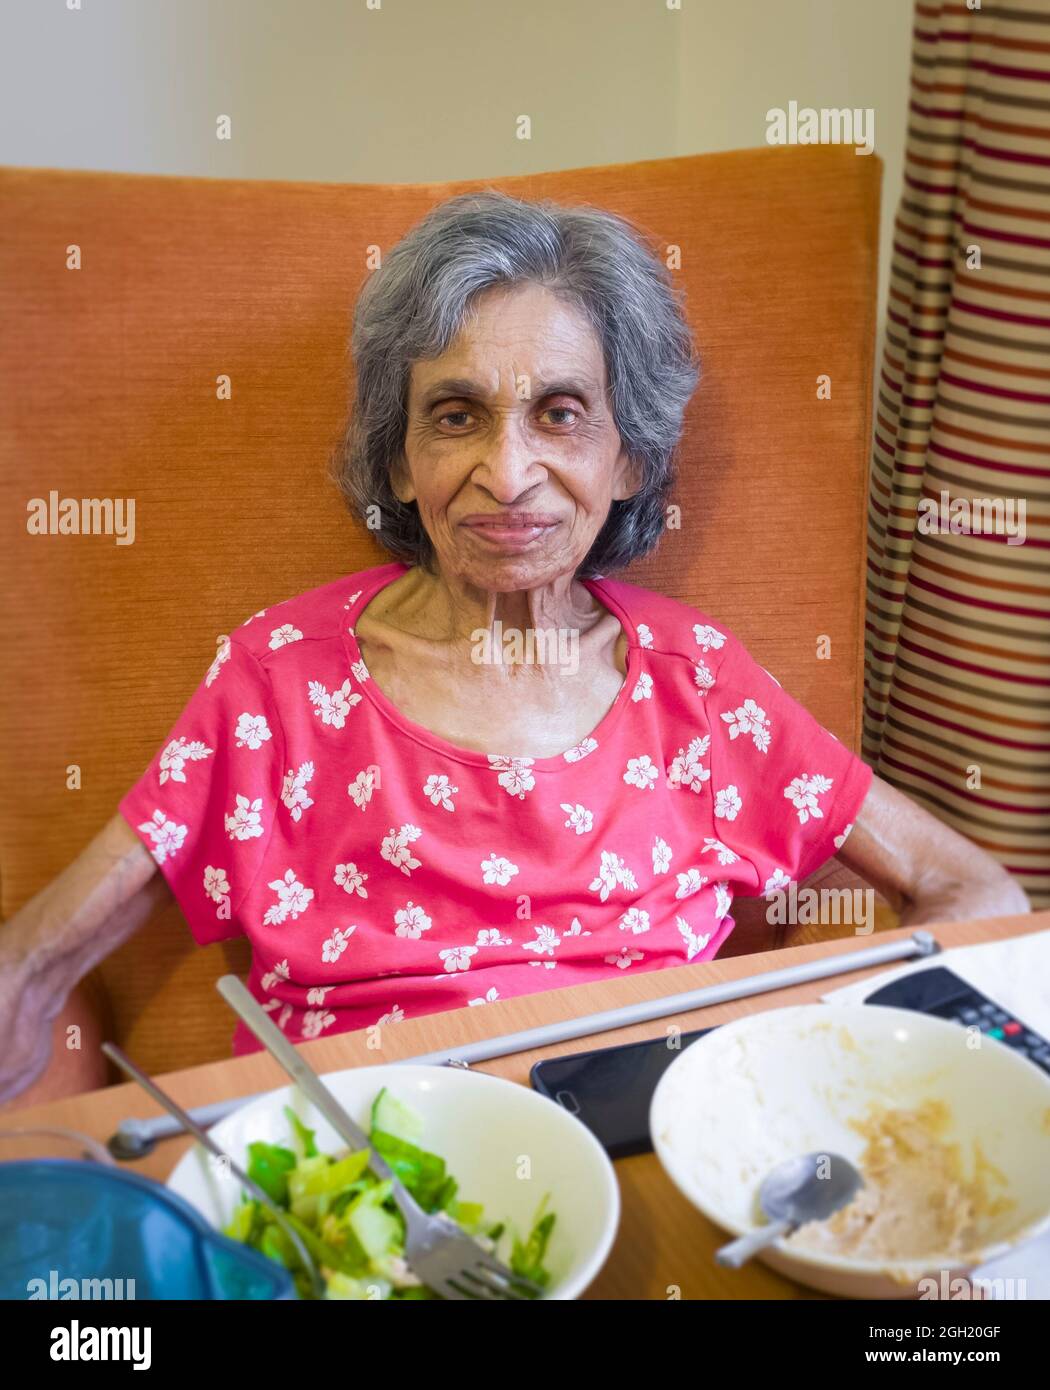 Ältere indische Frau in einem Pflegeheim oder Pflegeheim, Großbritannien, sitzt auf einem Stuhl und isst eine Mahlzeit. Zeigt Gebrechlichkeit und Unterernährung im Alter Stockfoto